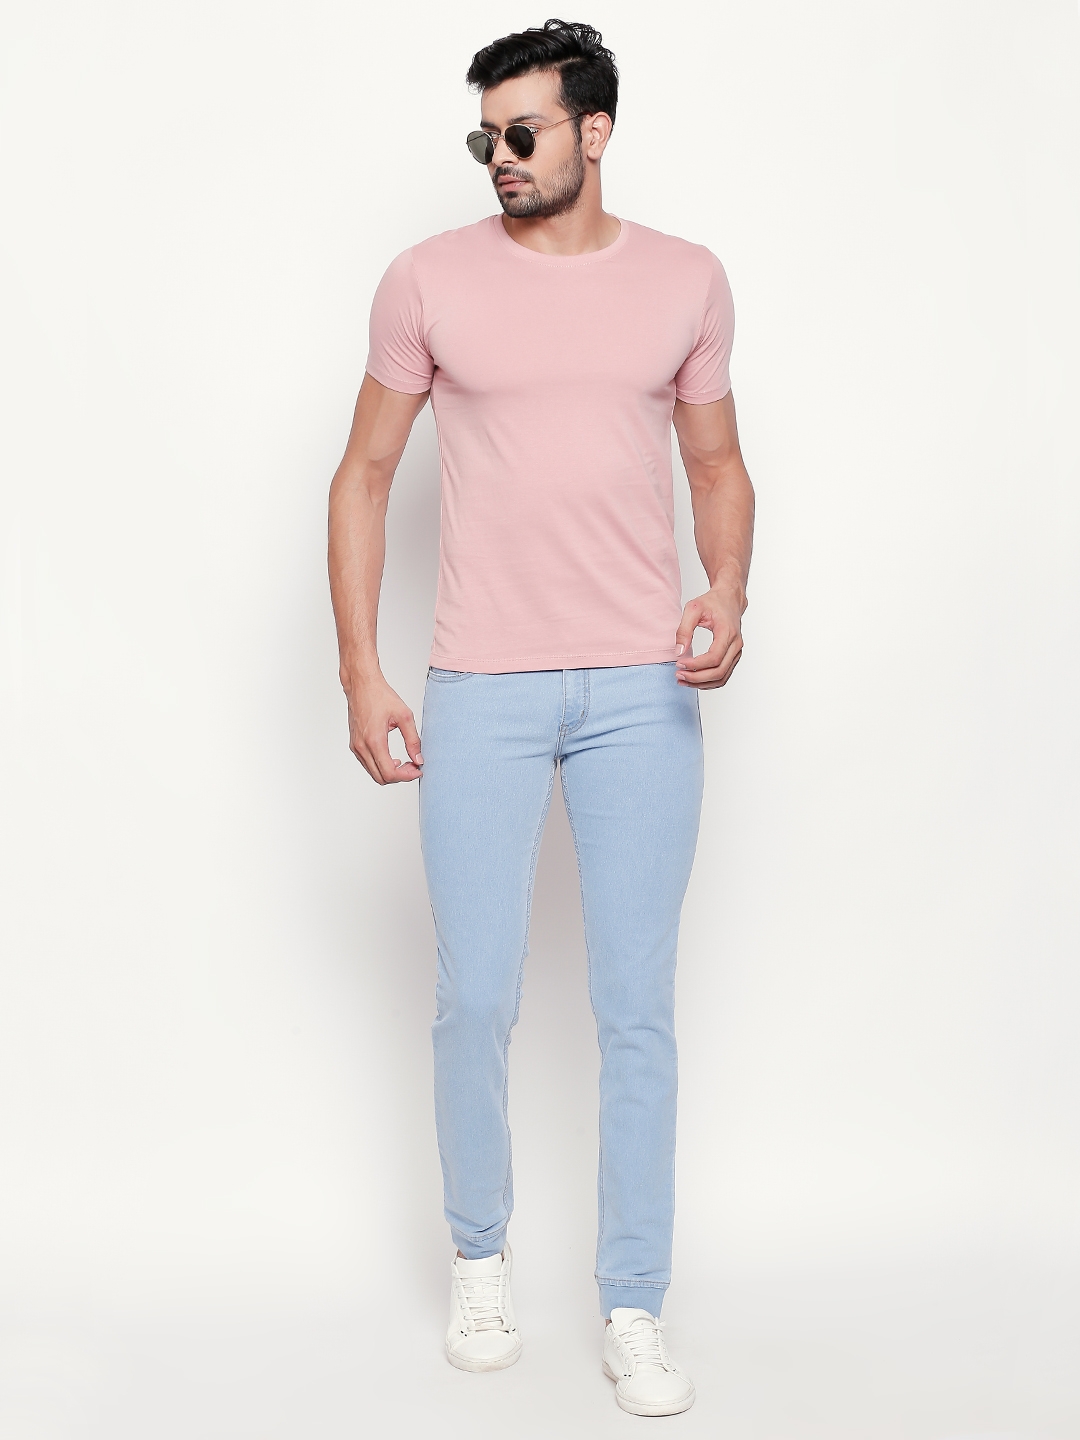 creativeideas.store | Pink Plain Tshirt 3